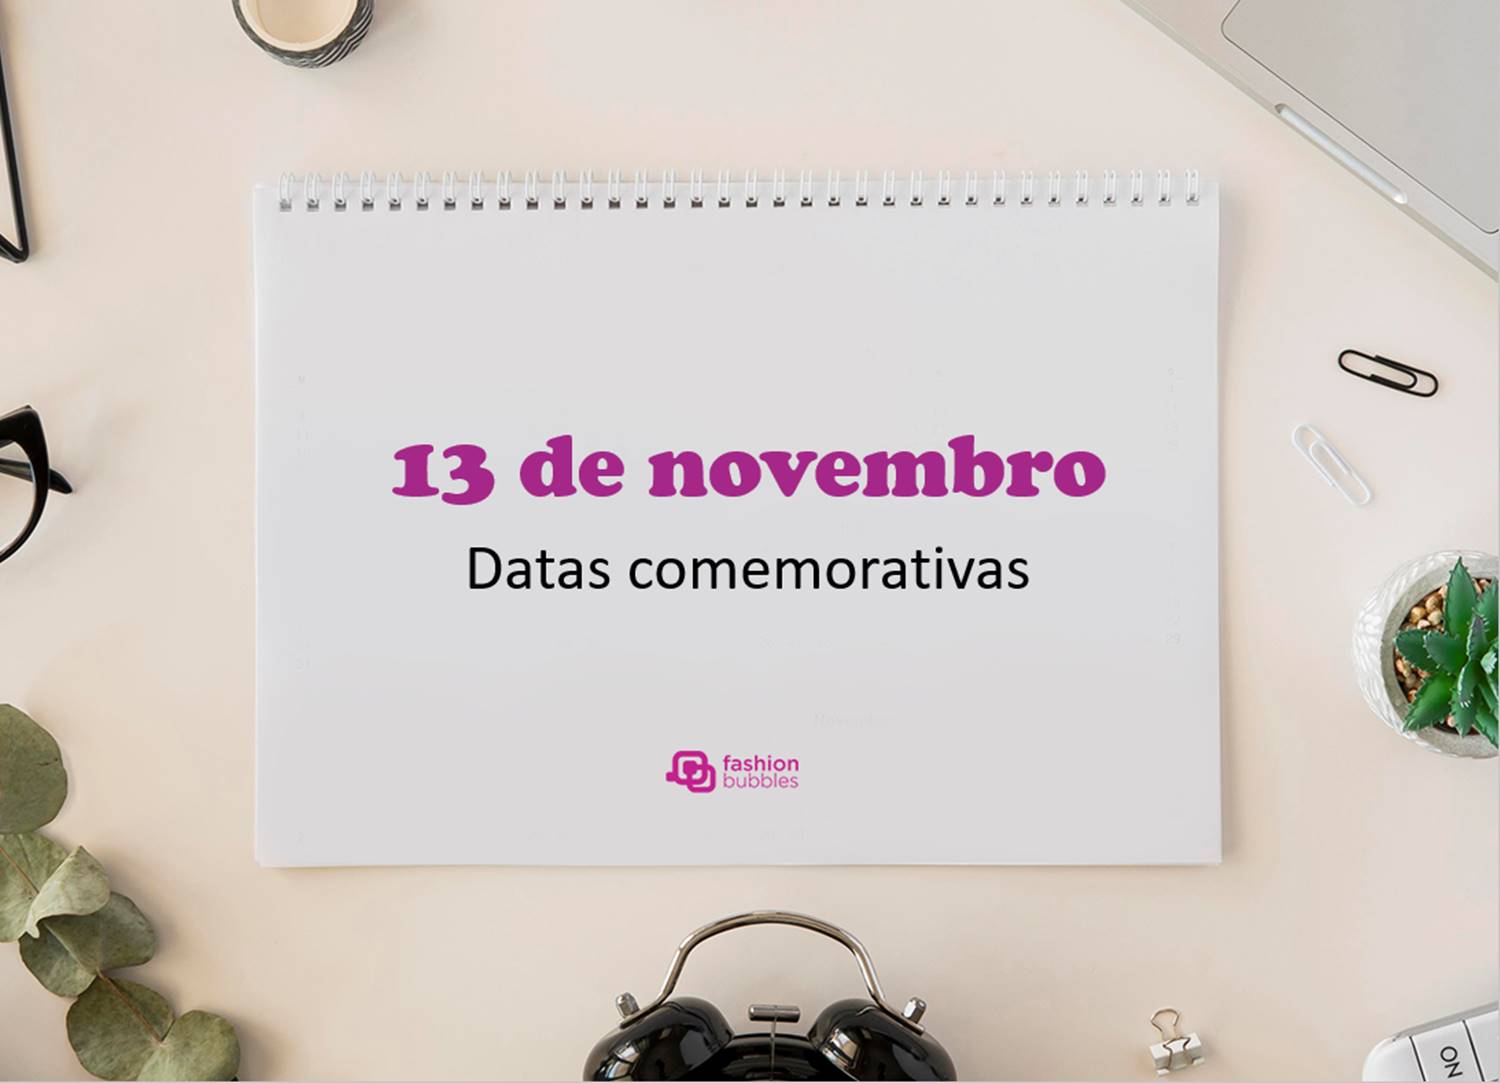 Foto com a frase: "13 de novembro - datas comemorativas".